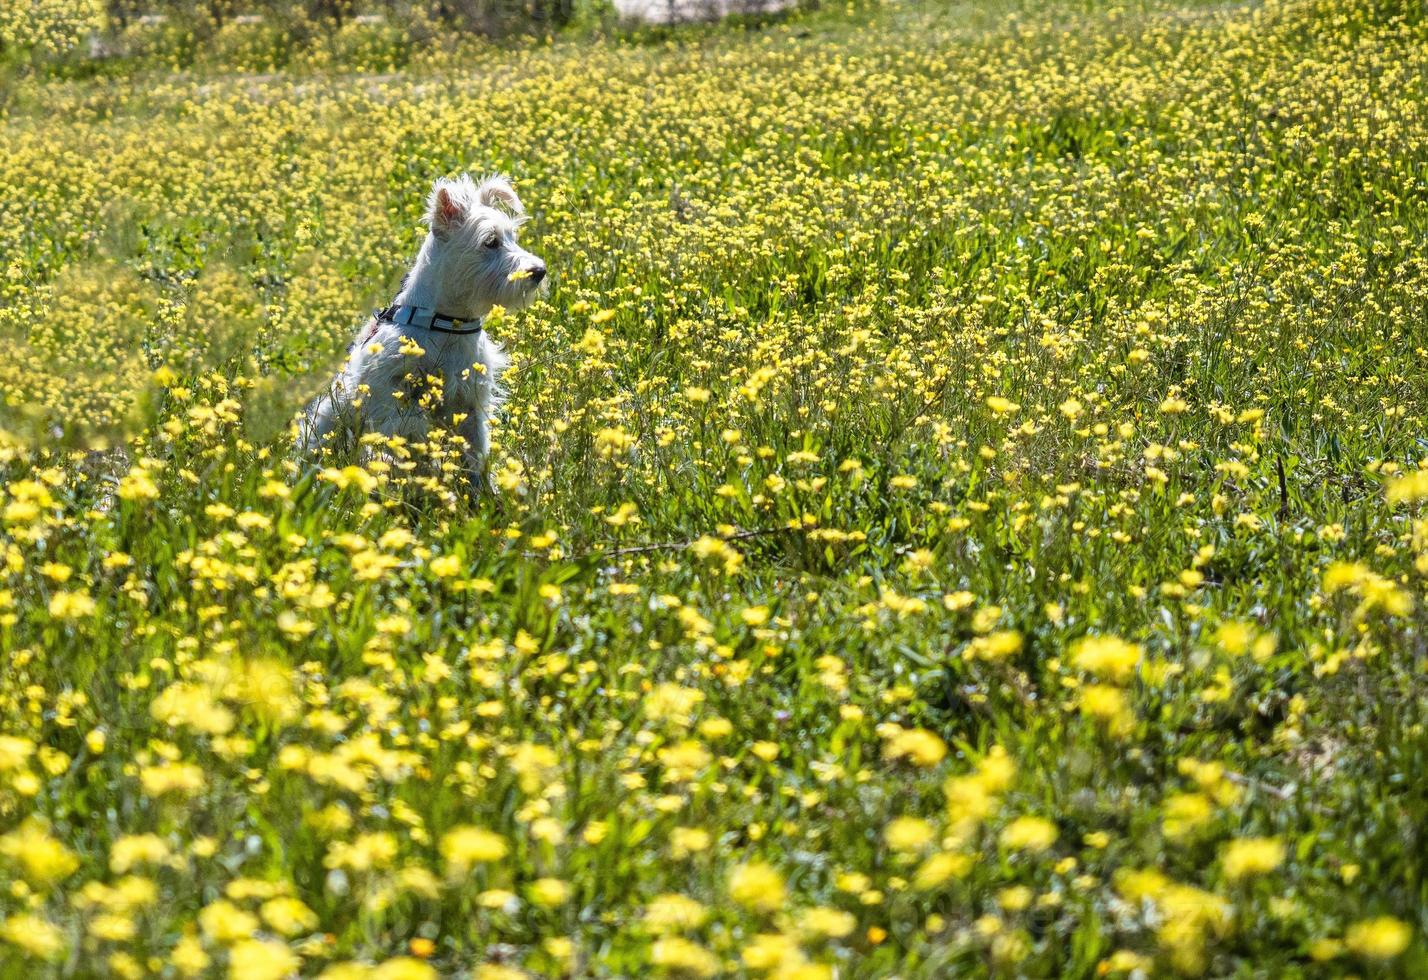 Schnauzer cachorro en color blanco posa en un campo con flores amarillas foto